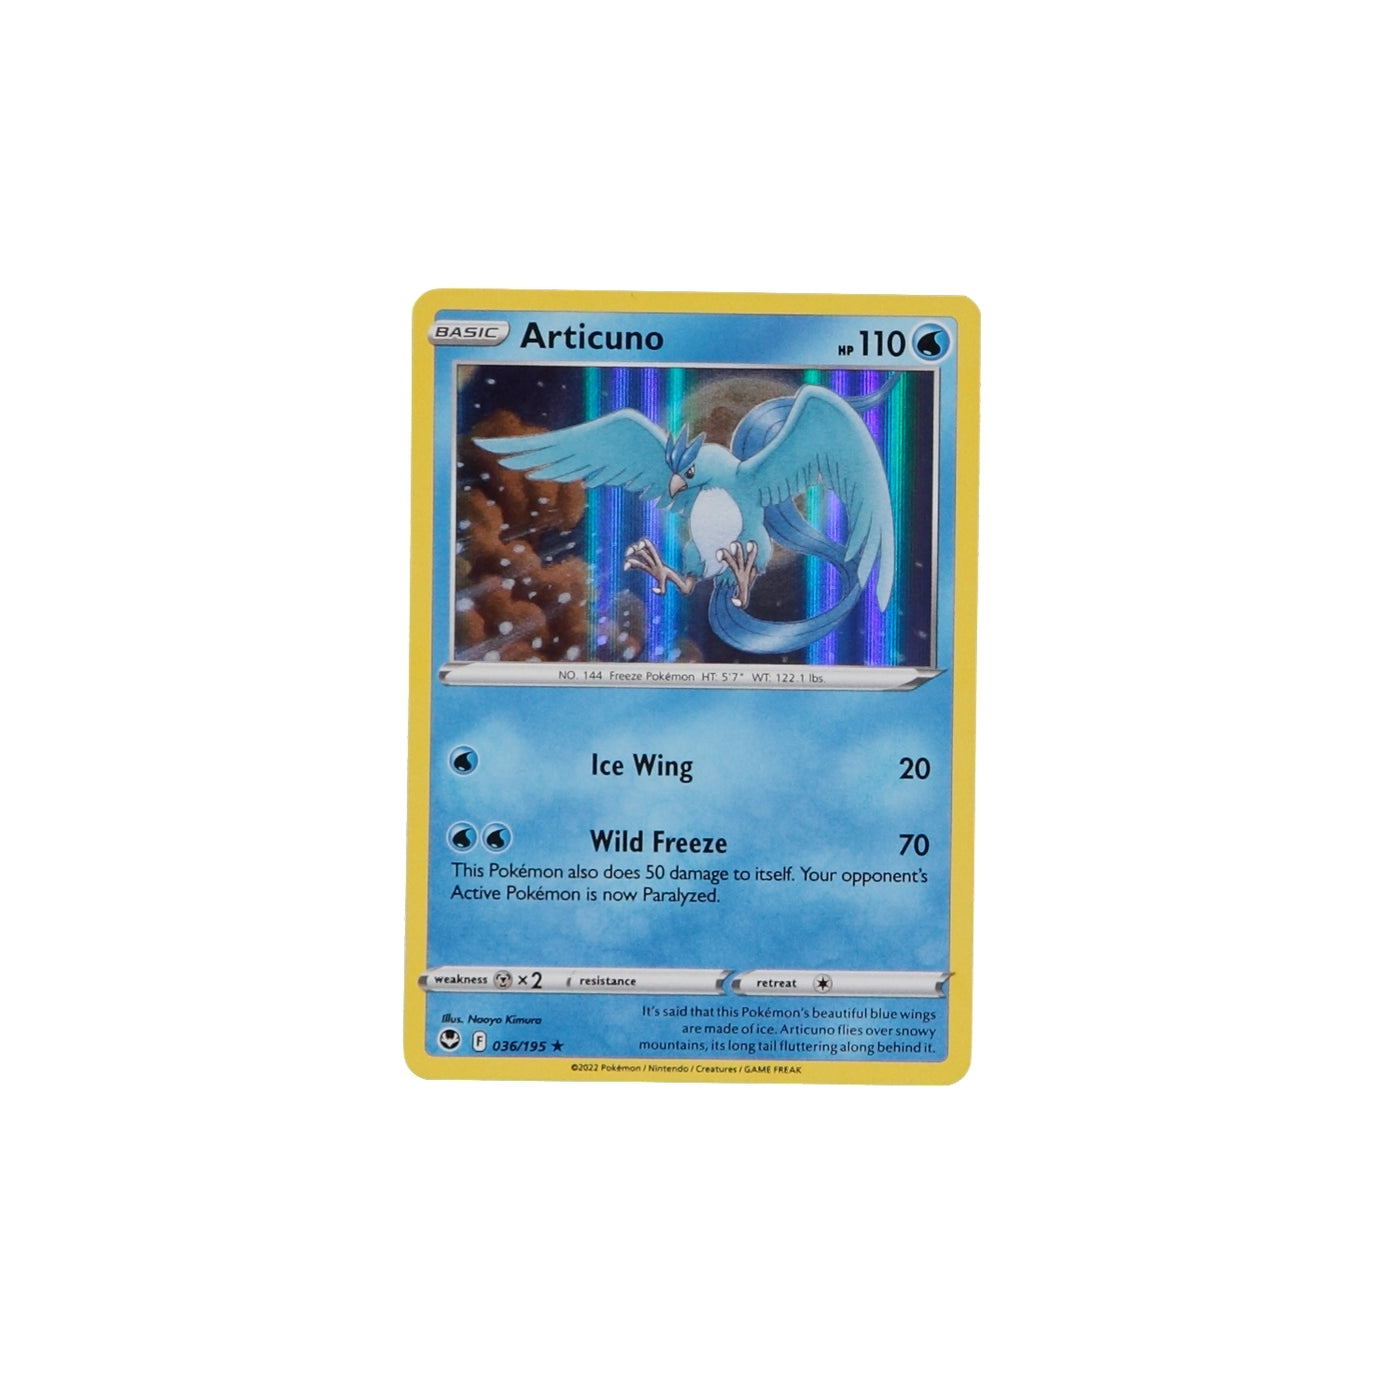 Articuno Holo - Silver Tempest Pokémon card